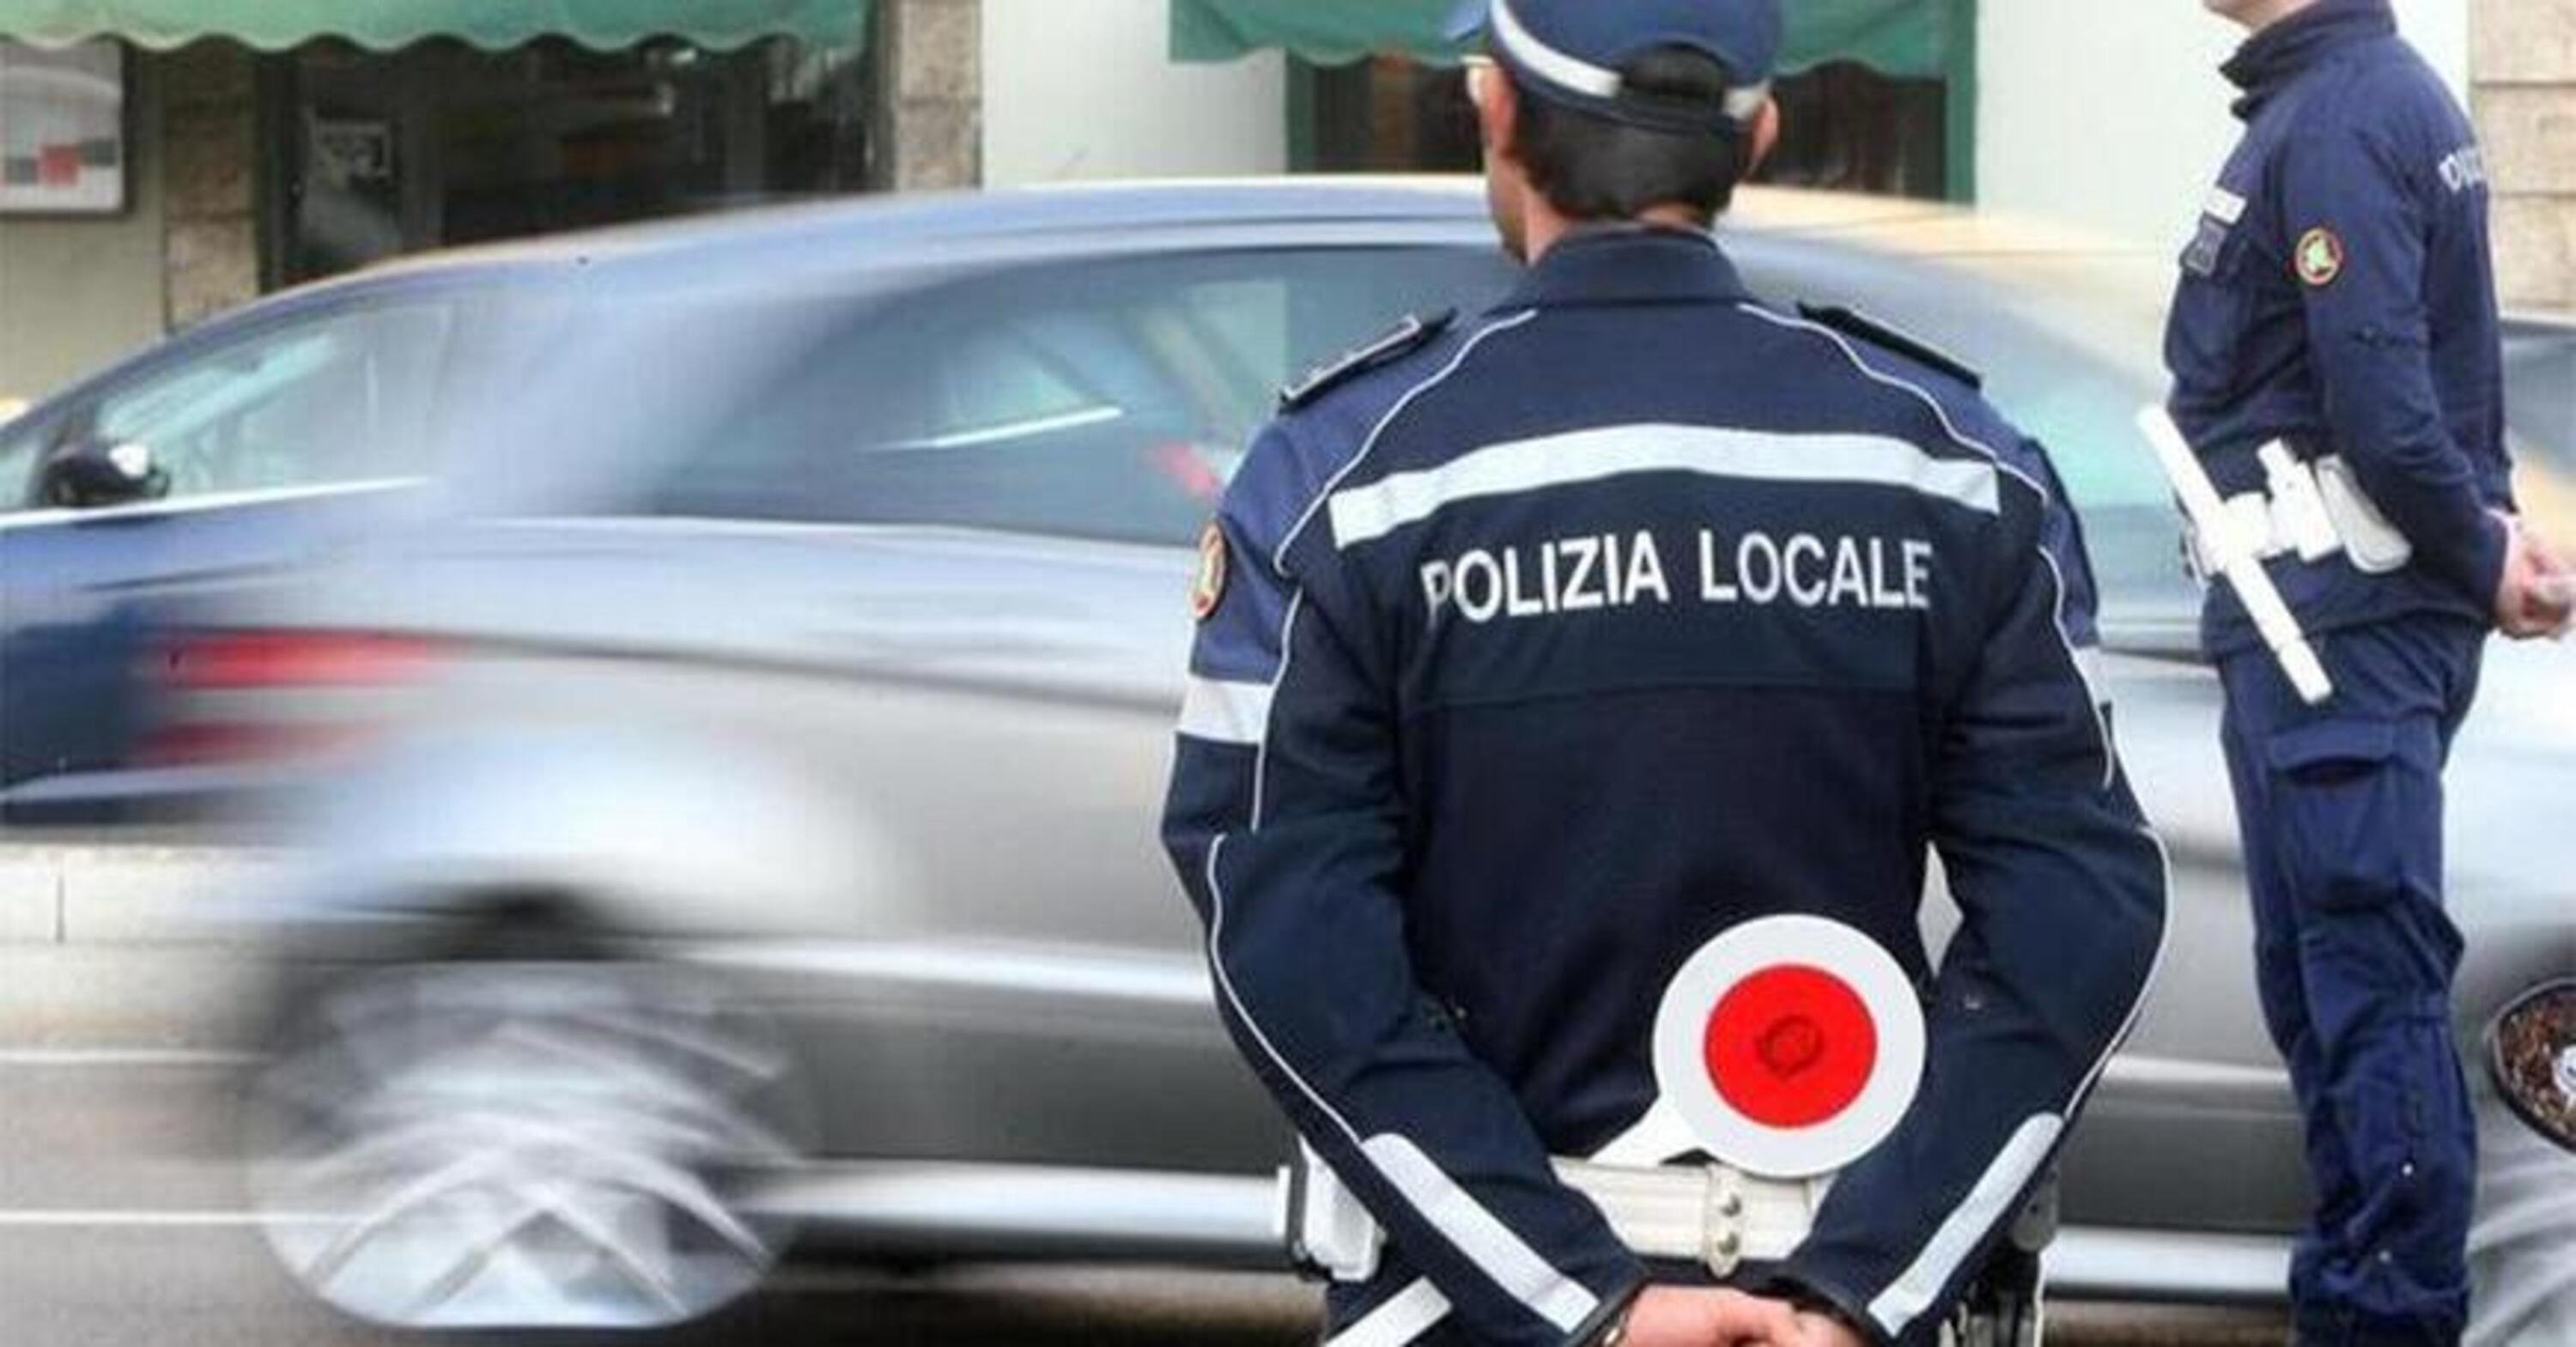 Rimini: fermato su uno scooter senza assicurazione lancia il casco contro gli agenti e fugge